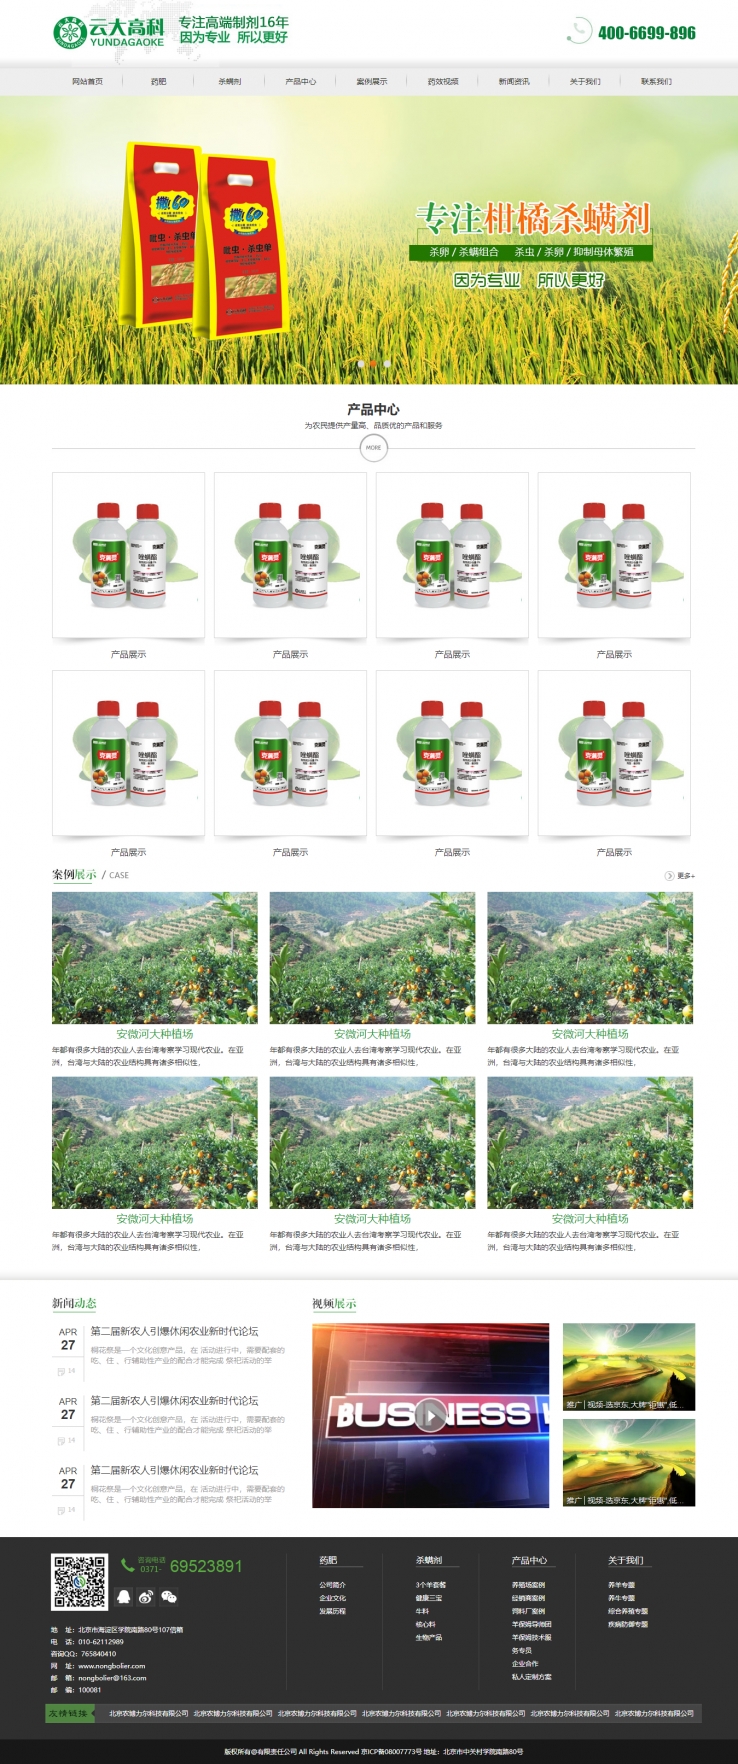 绿色简洁风格的农药化肥公司企业网站源码下载